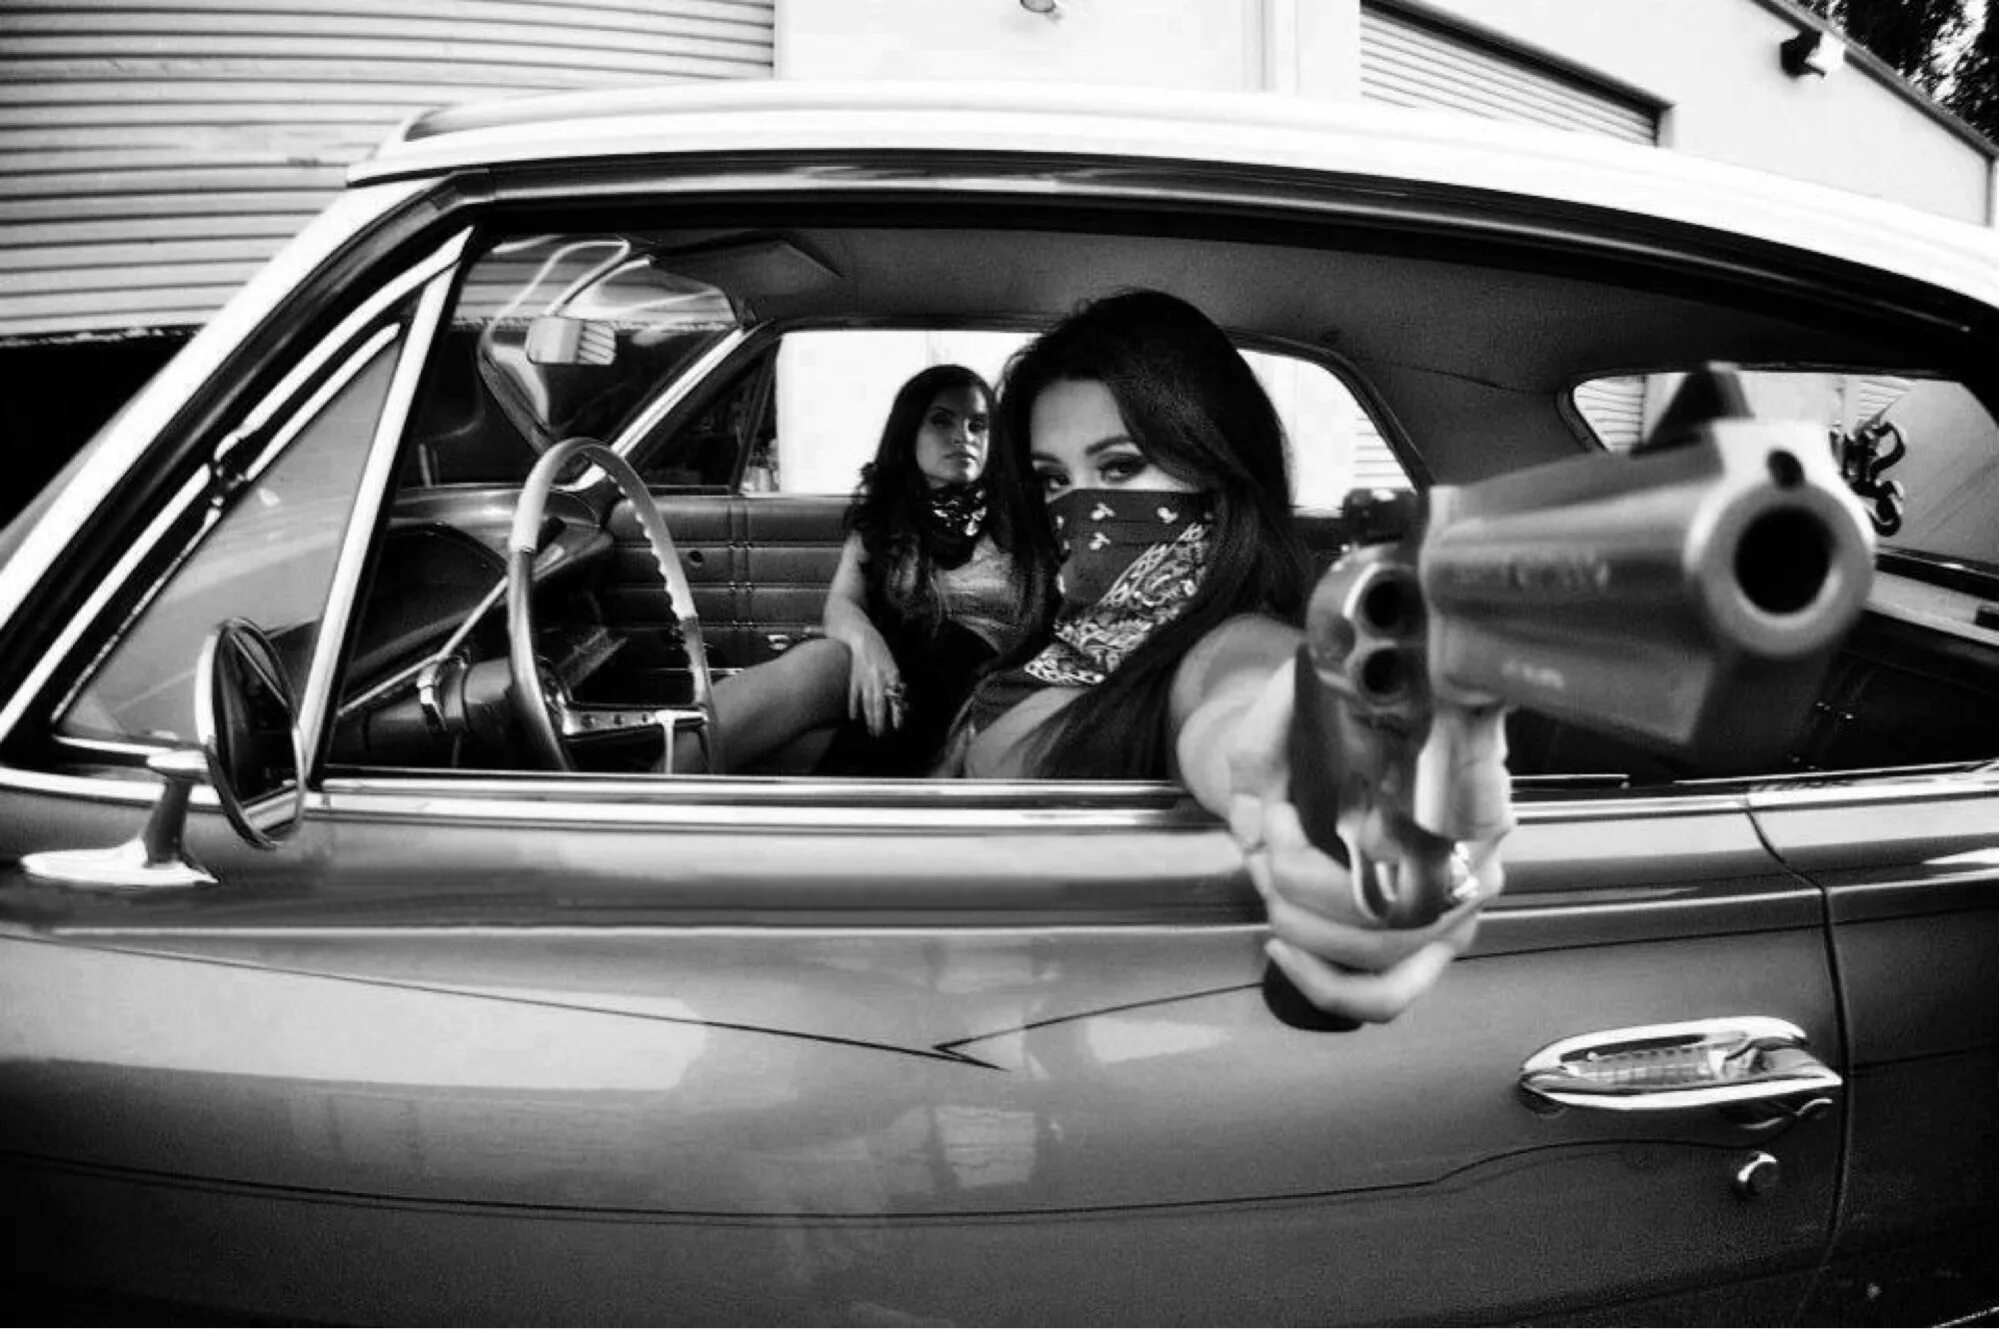 UNAVERAGE gang whole gang Mobbin. Лоурайдер 2pac. Девушка с пистолетом в машине. Девушка гангстер в машине.